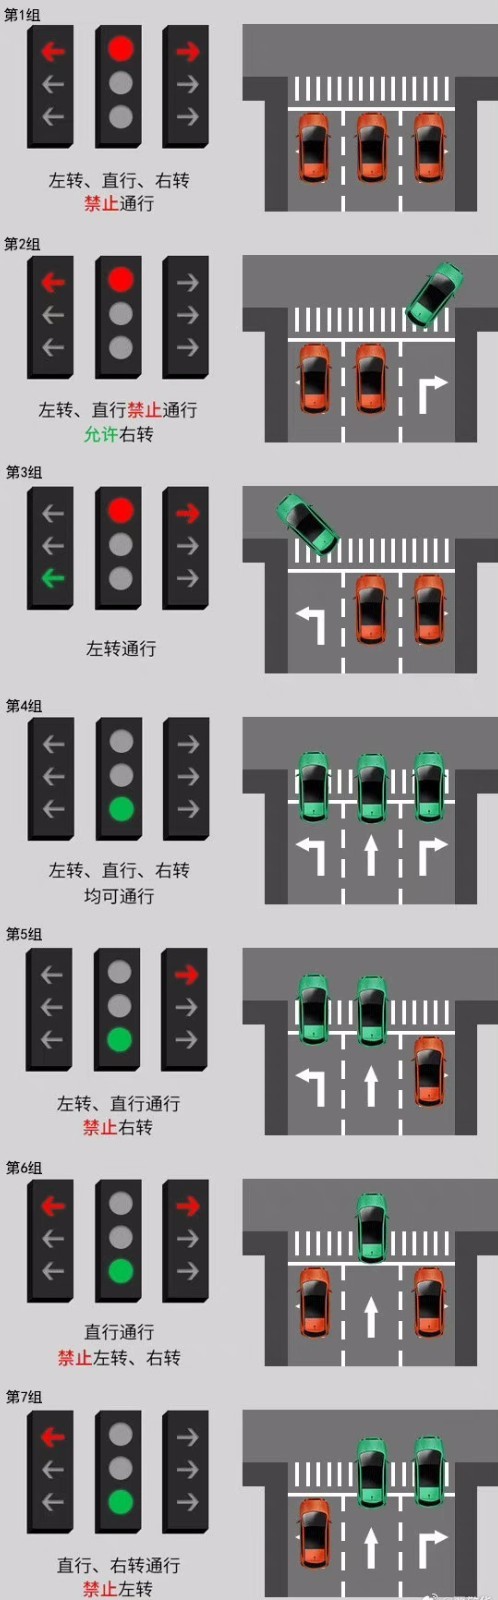 大转盘红绿灯通行规则图片